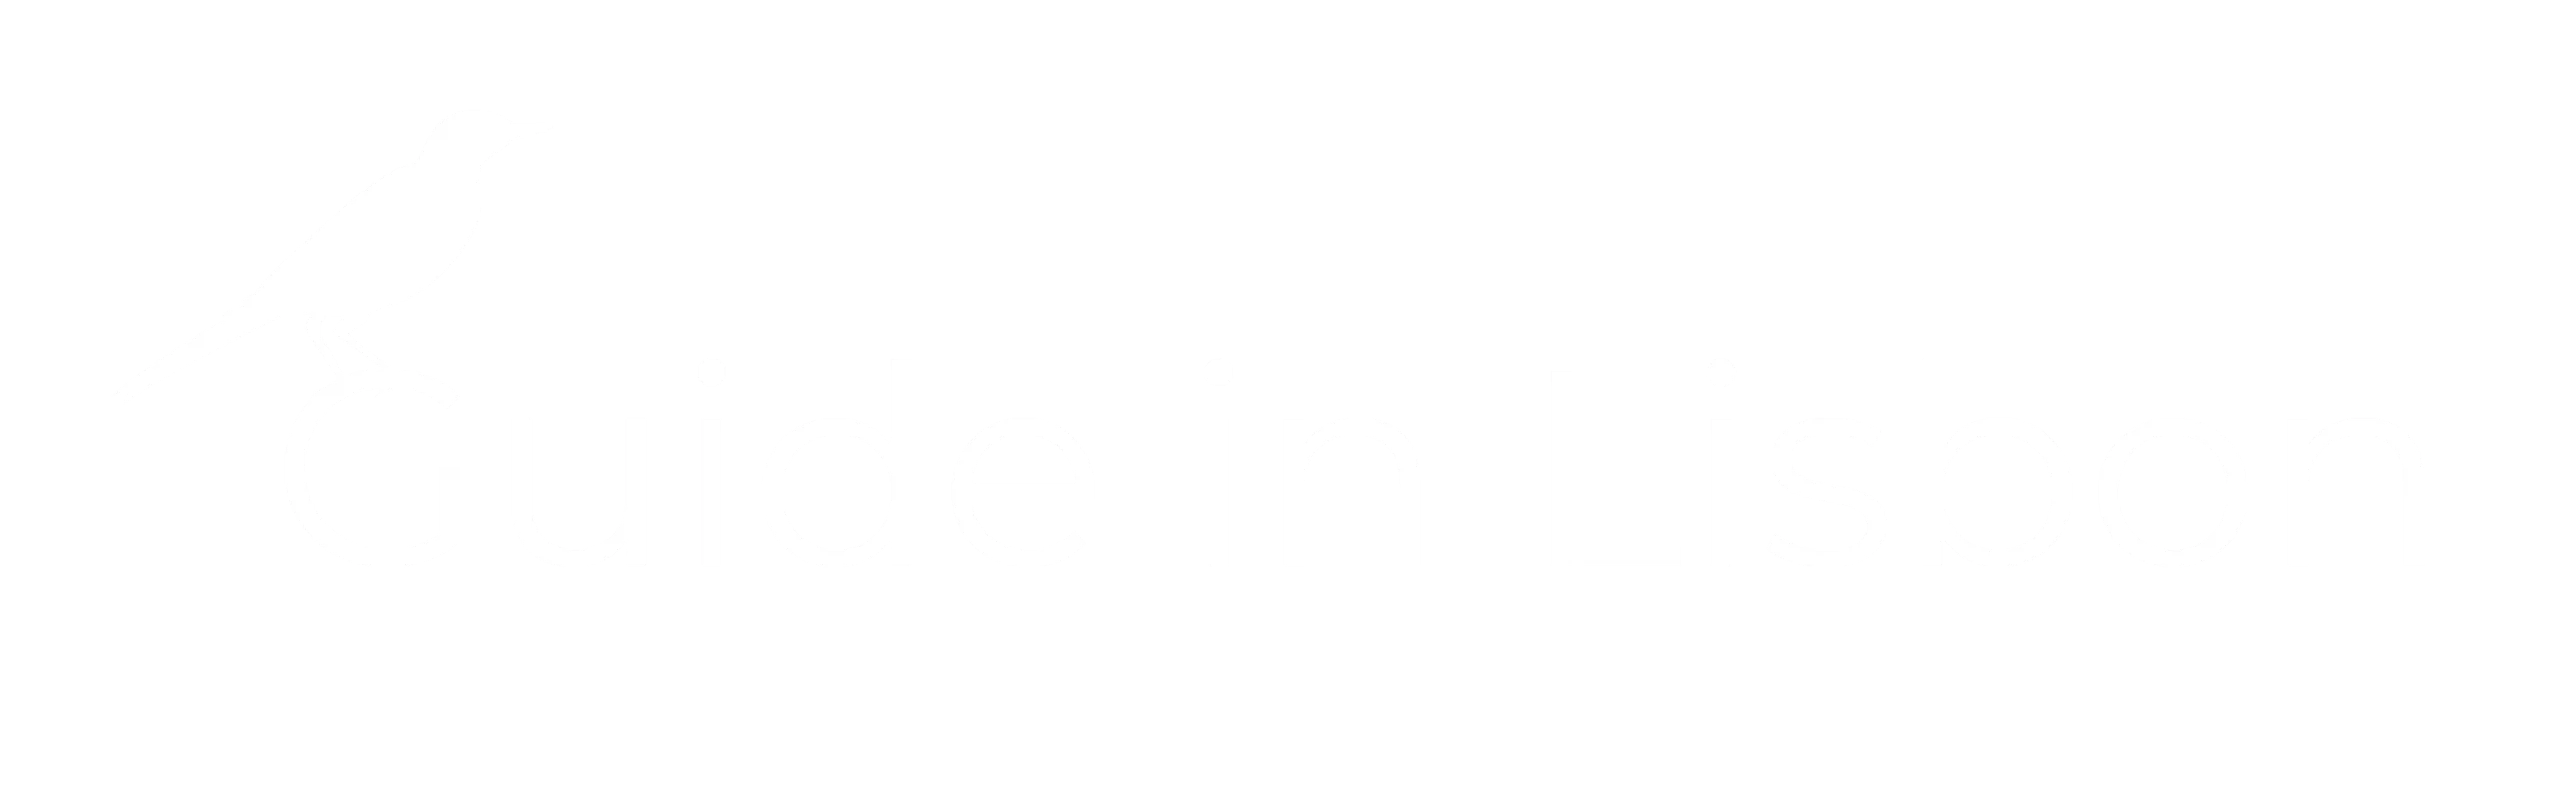 Guide-in-Lisbon-logo-white